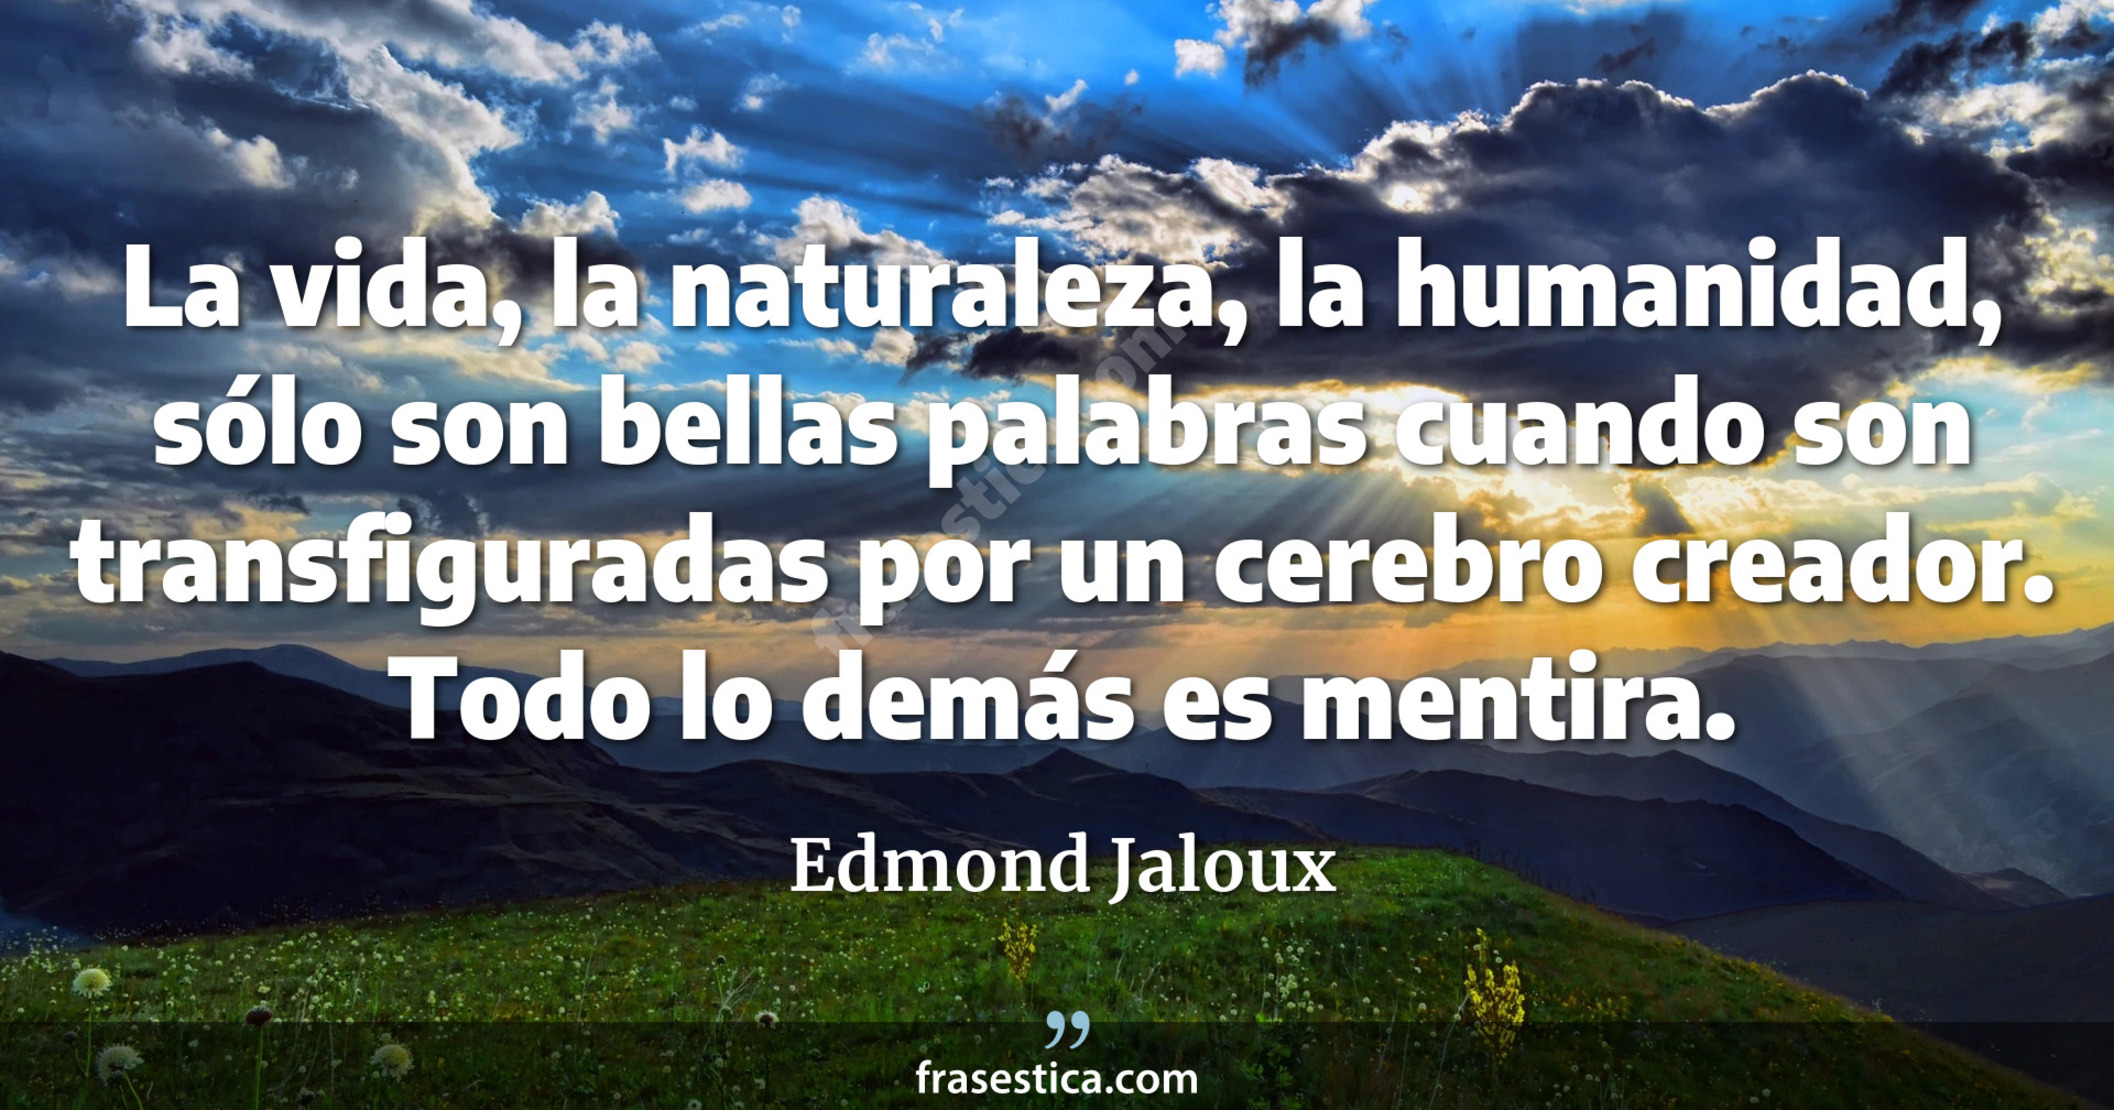 La vida, la naturaleza, la humanidad, sólo son bellas palabras cuando son transfiguradas por un cerebro creador. Todo lo demás es mentira. - Edmond Jaloux